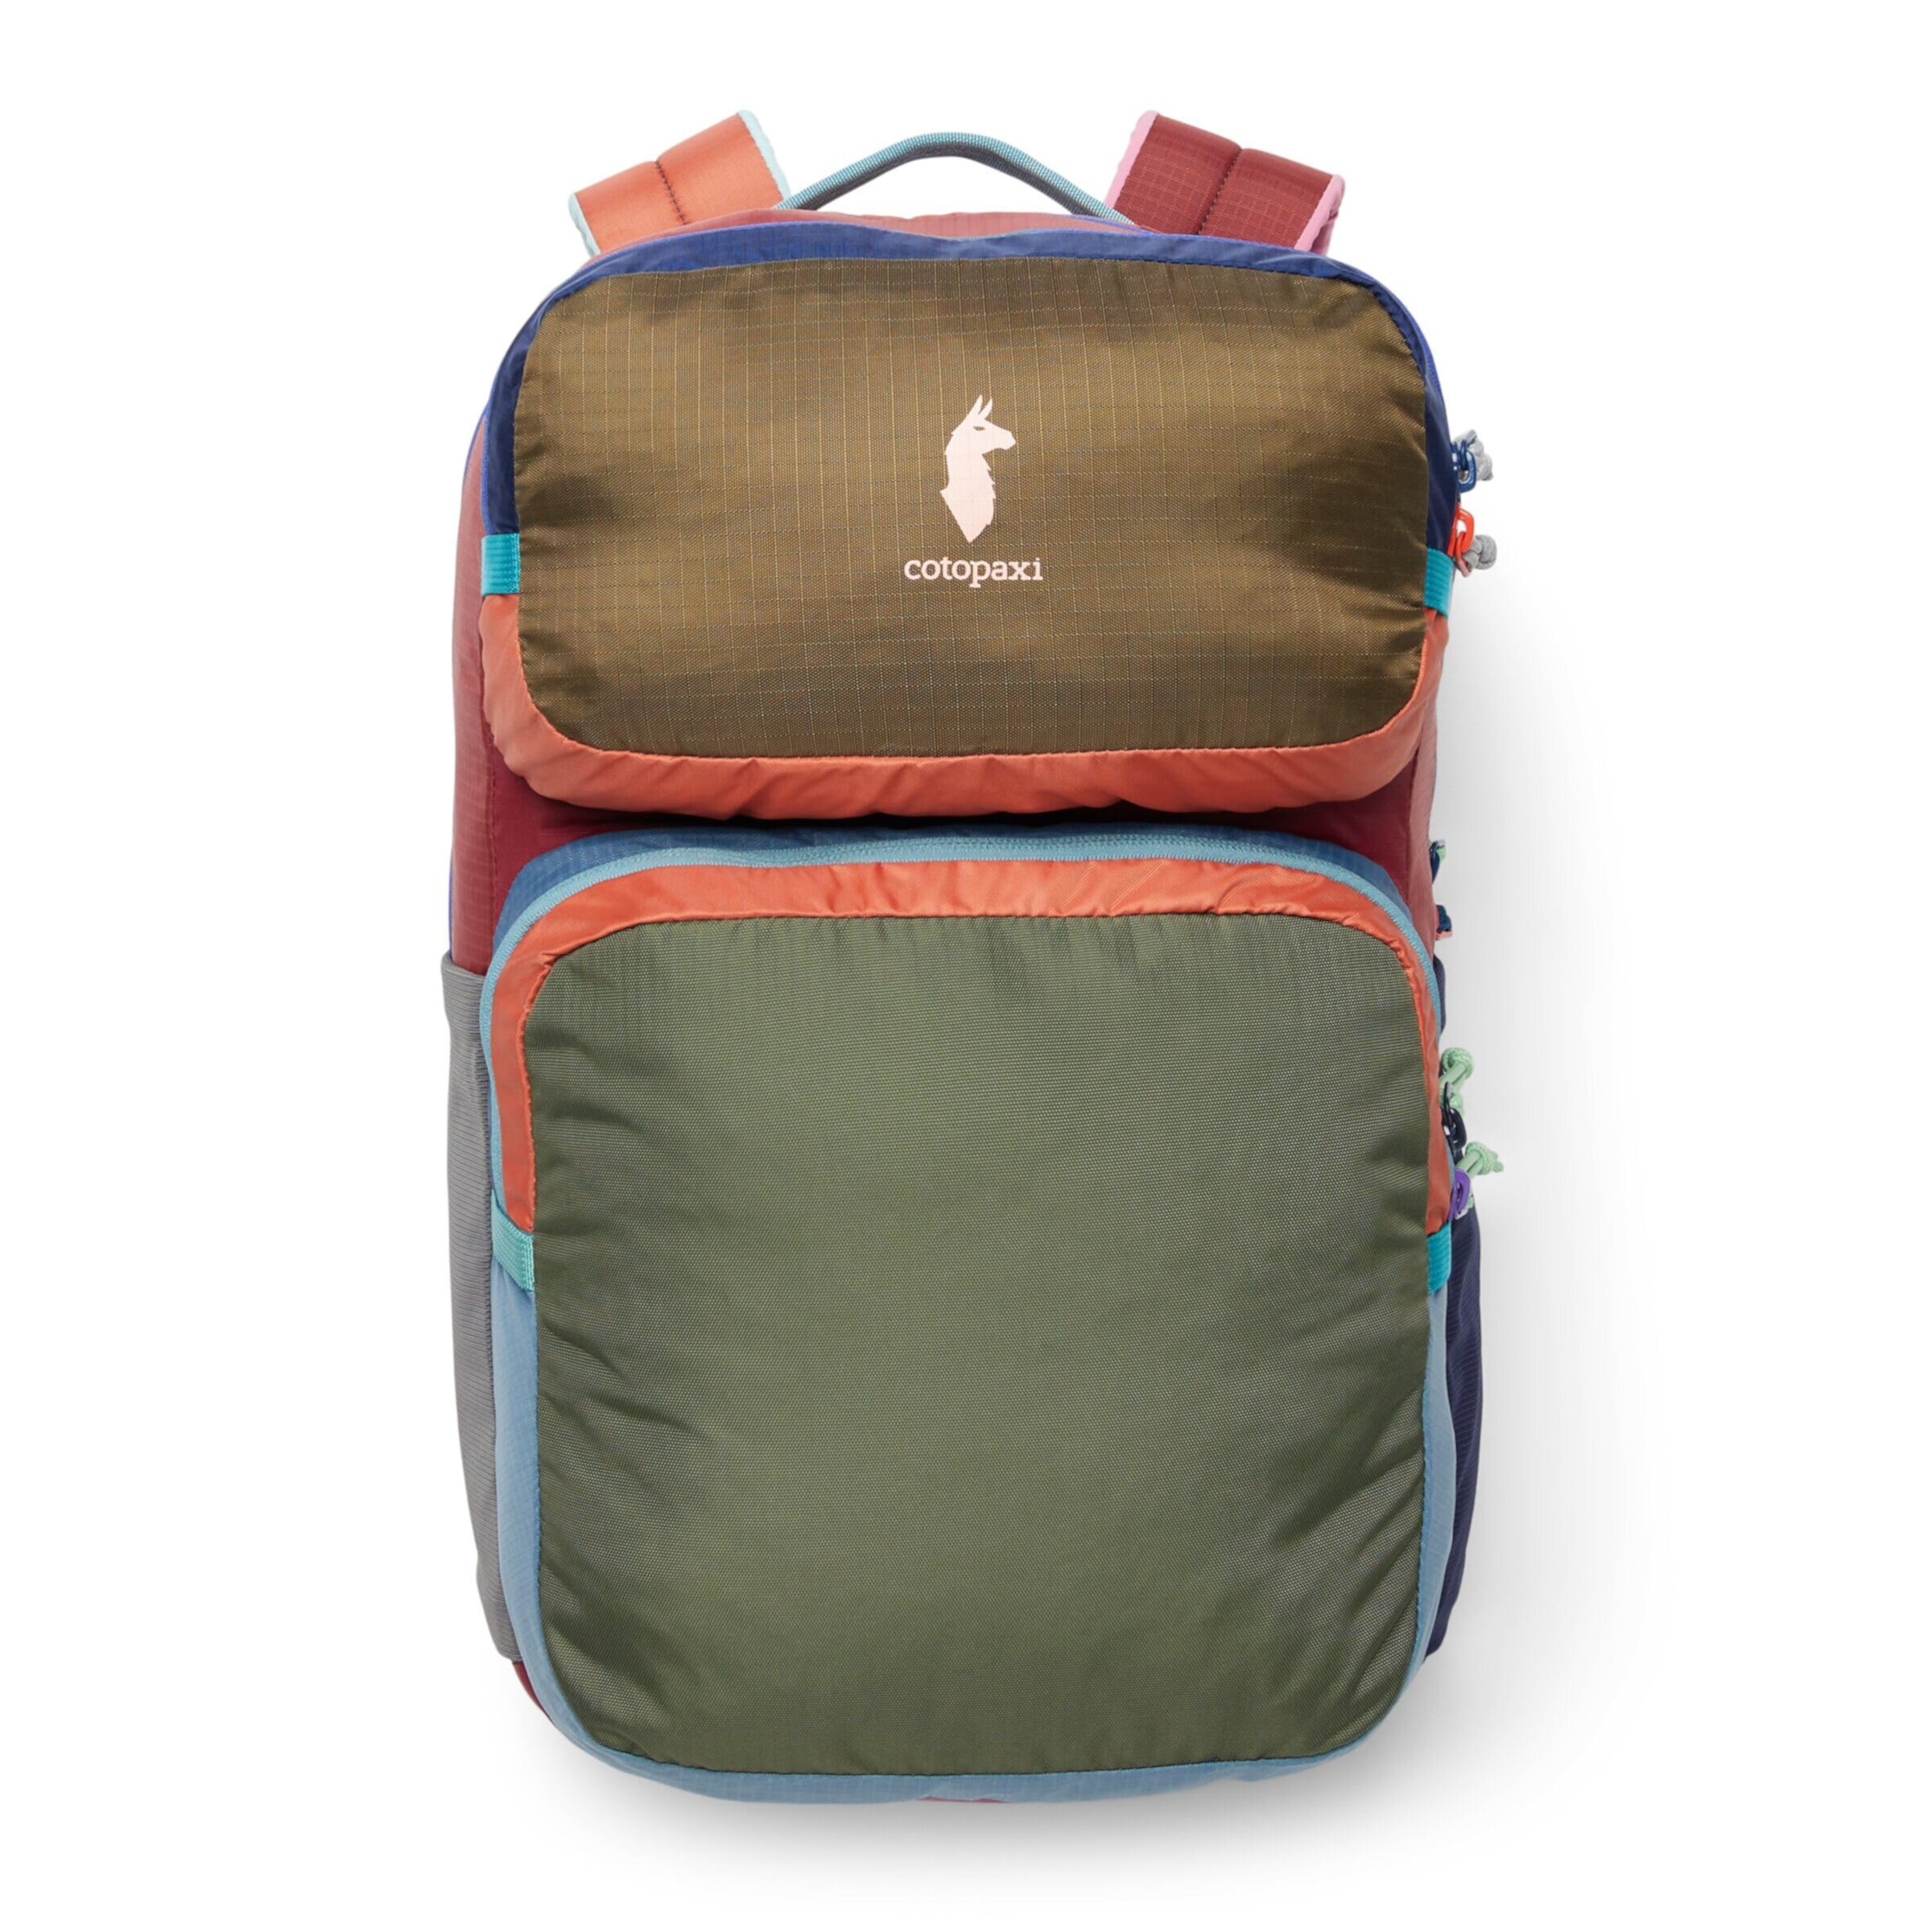 16 L Tasra Backpack - Del Dia Redesign Cotopaxi